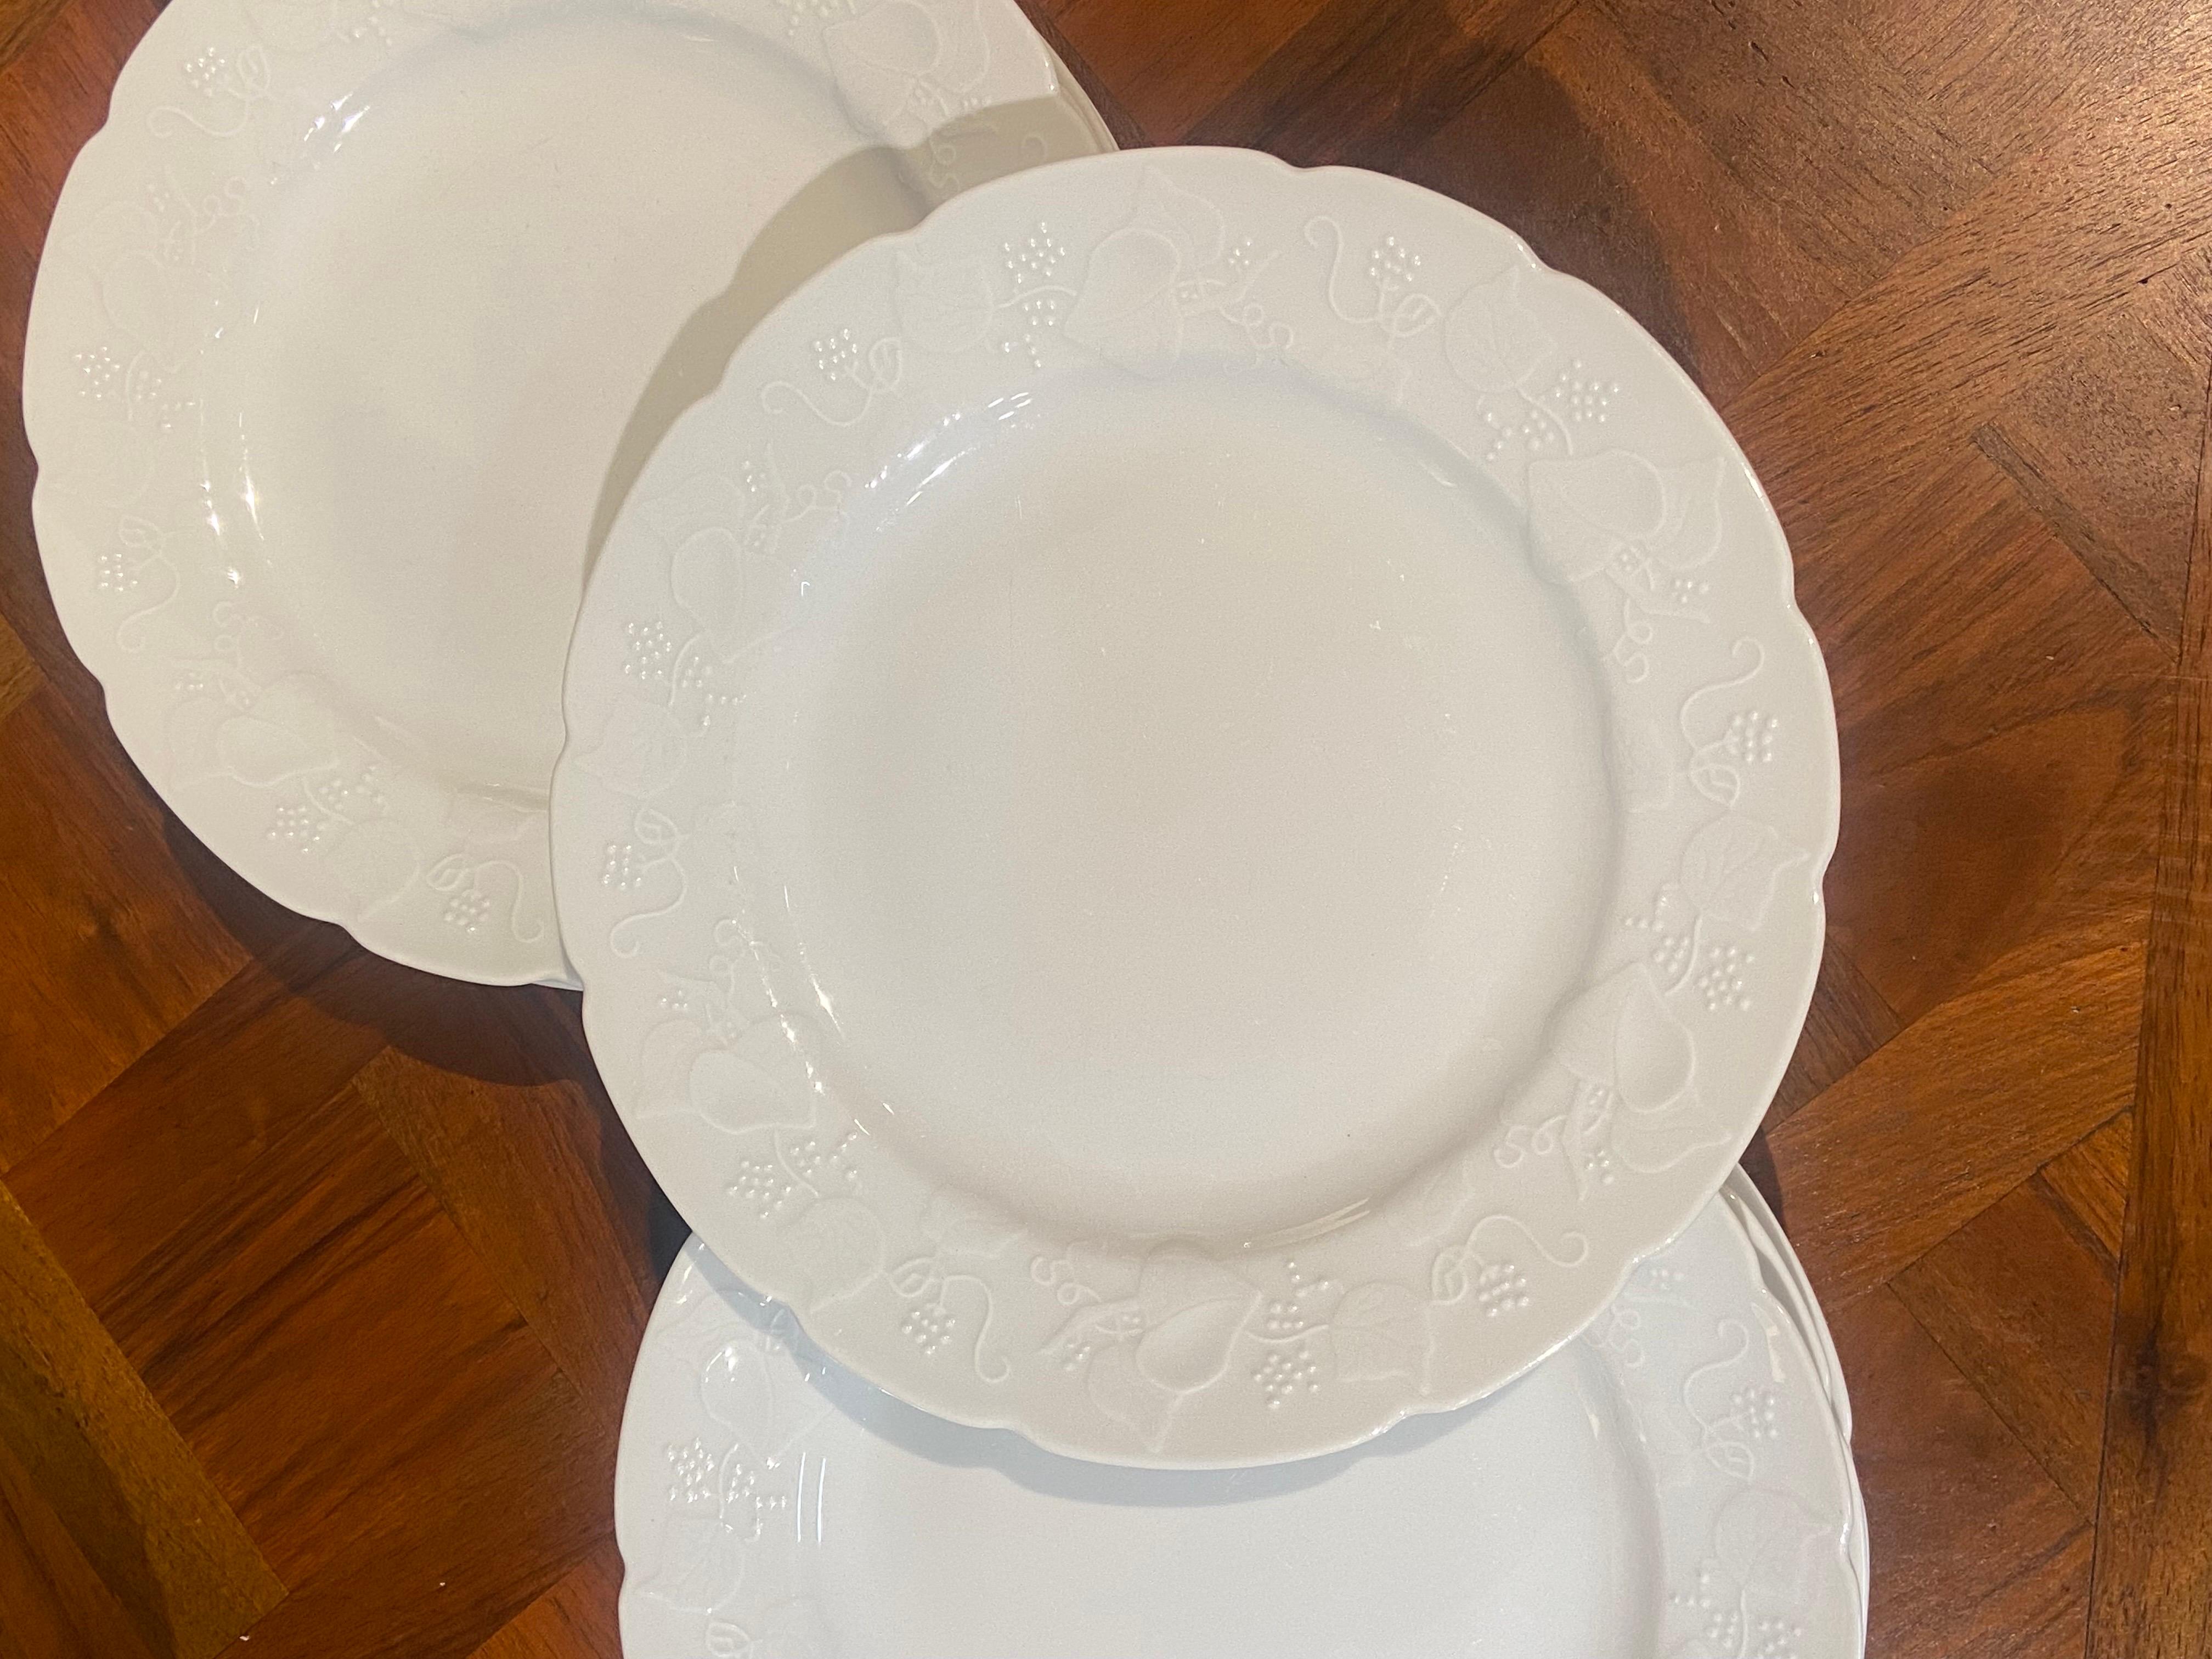 Juego de once platos llanos de Lierre Sauvage CNP realizados en cerámica de color blanco hueso con bonita decoración.
